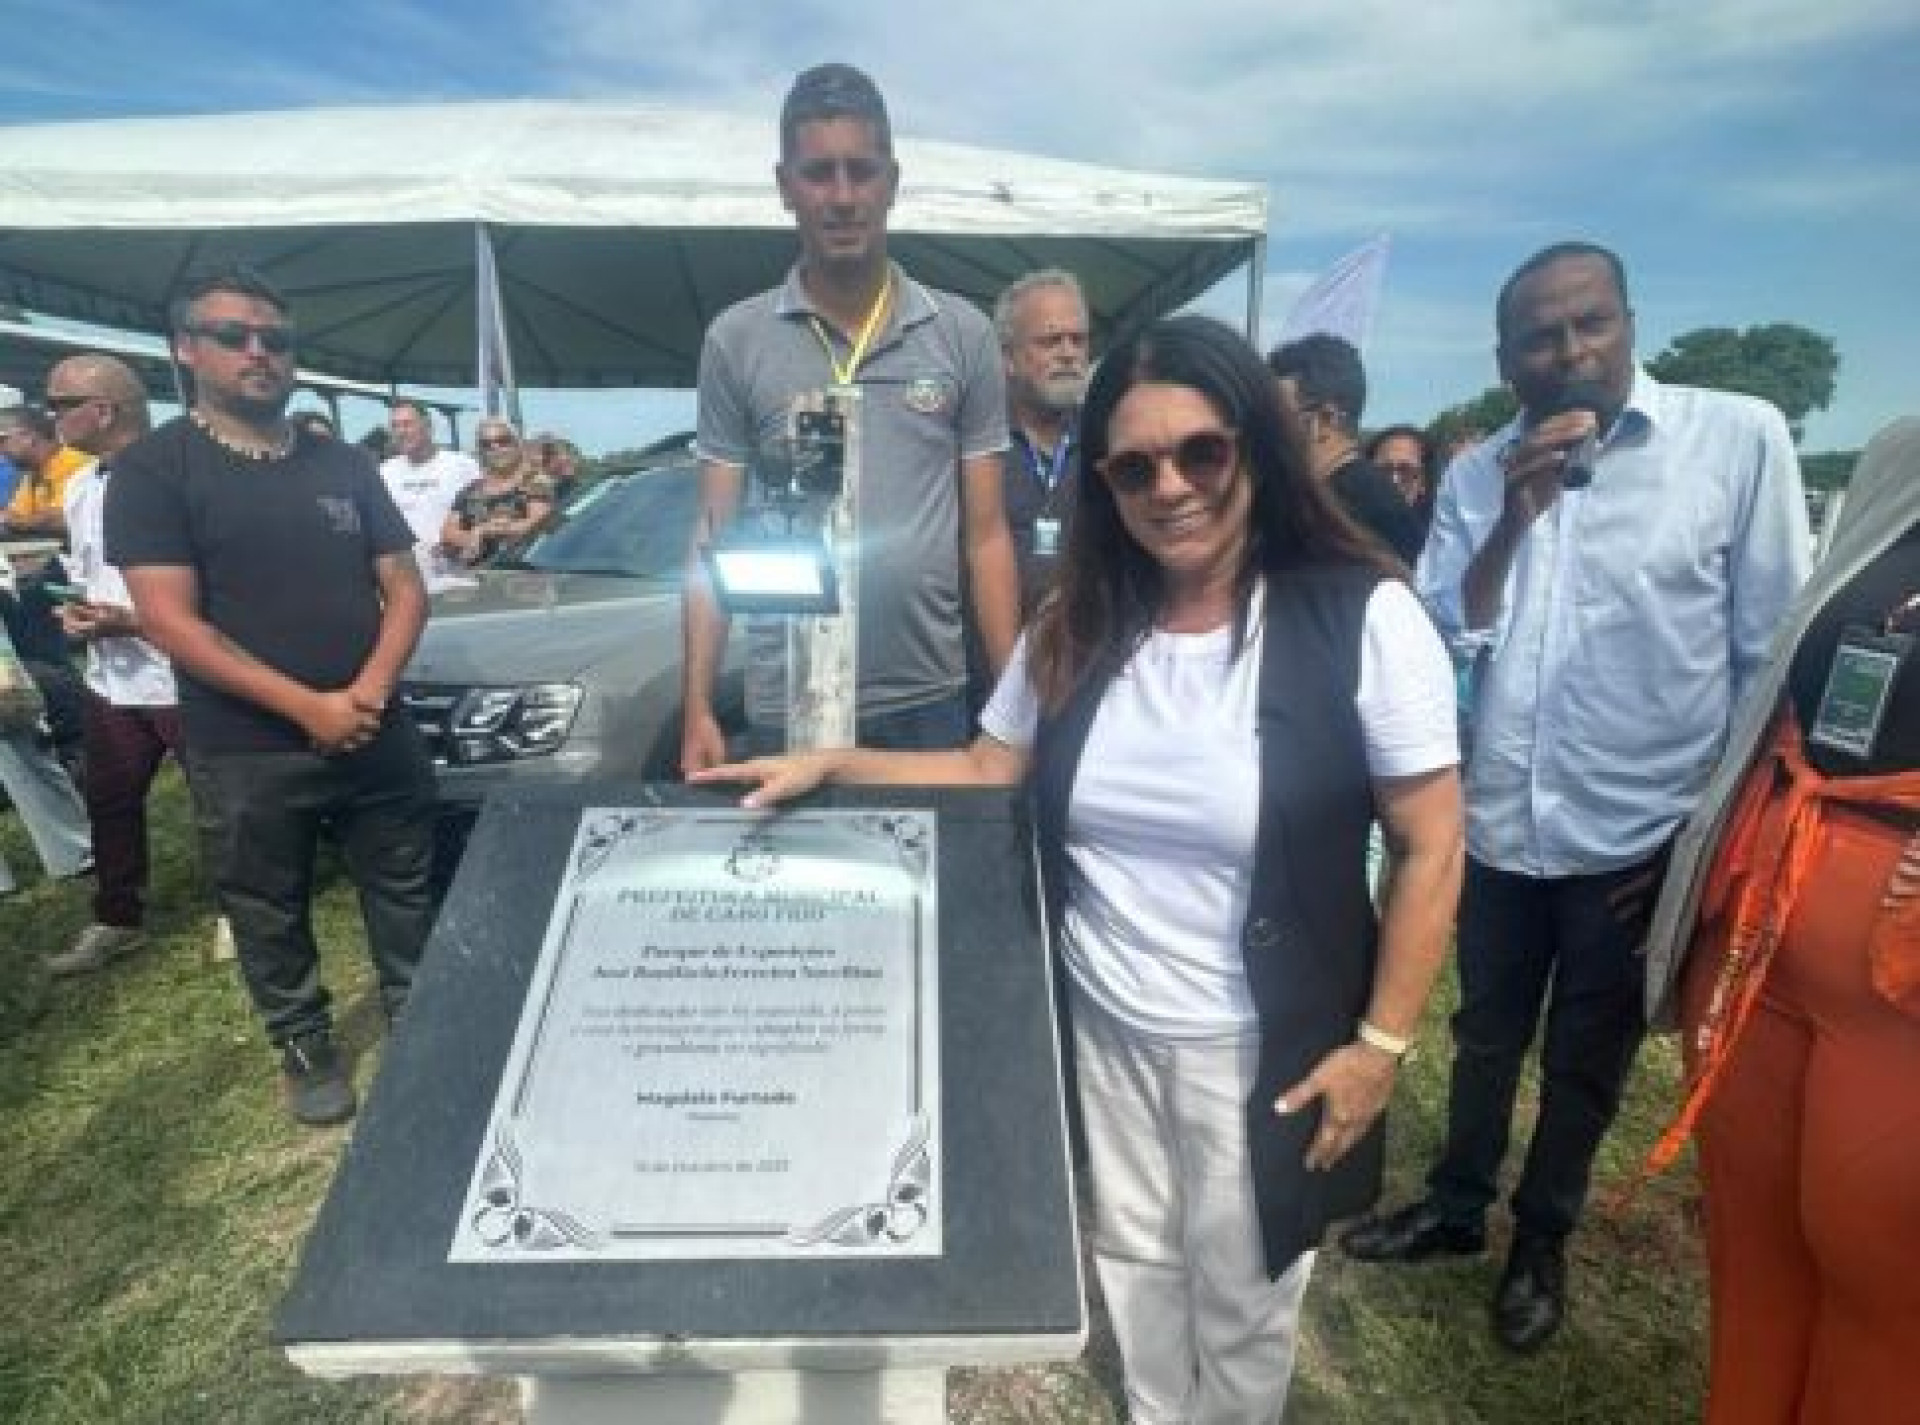 Magdala Furtado inaugura placa em homenagem ao falecido prefeito José Bonifácio (PT) - Divulgação